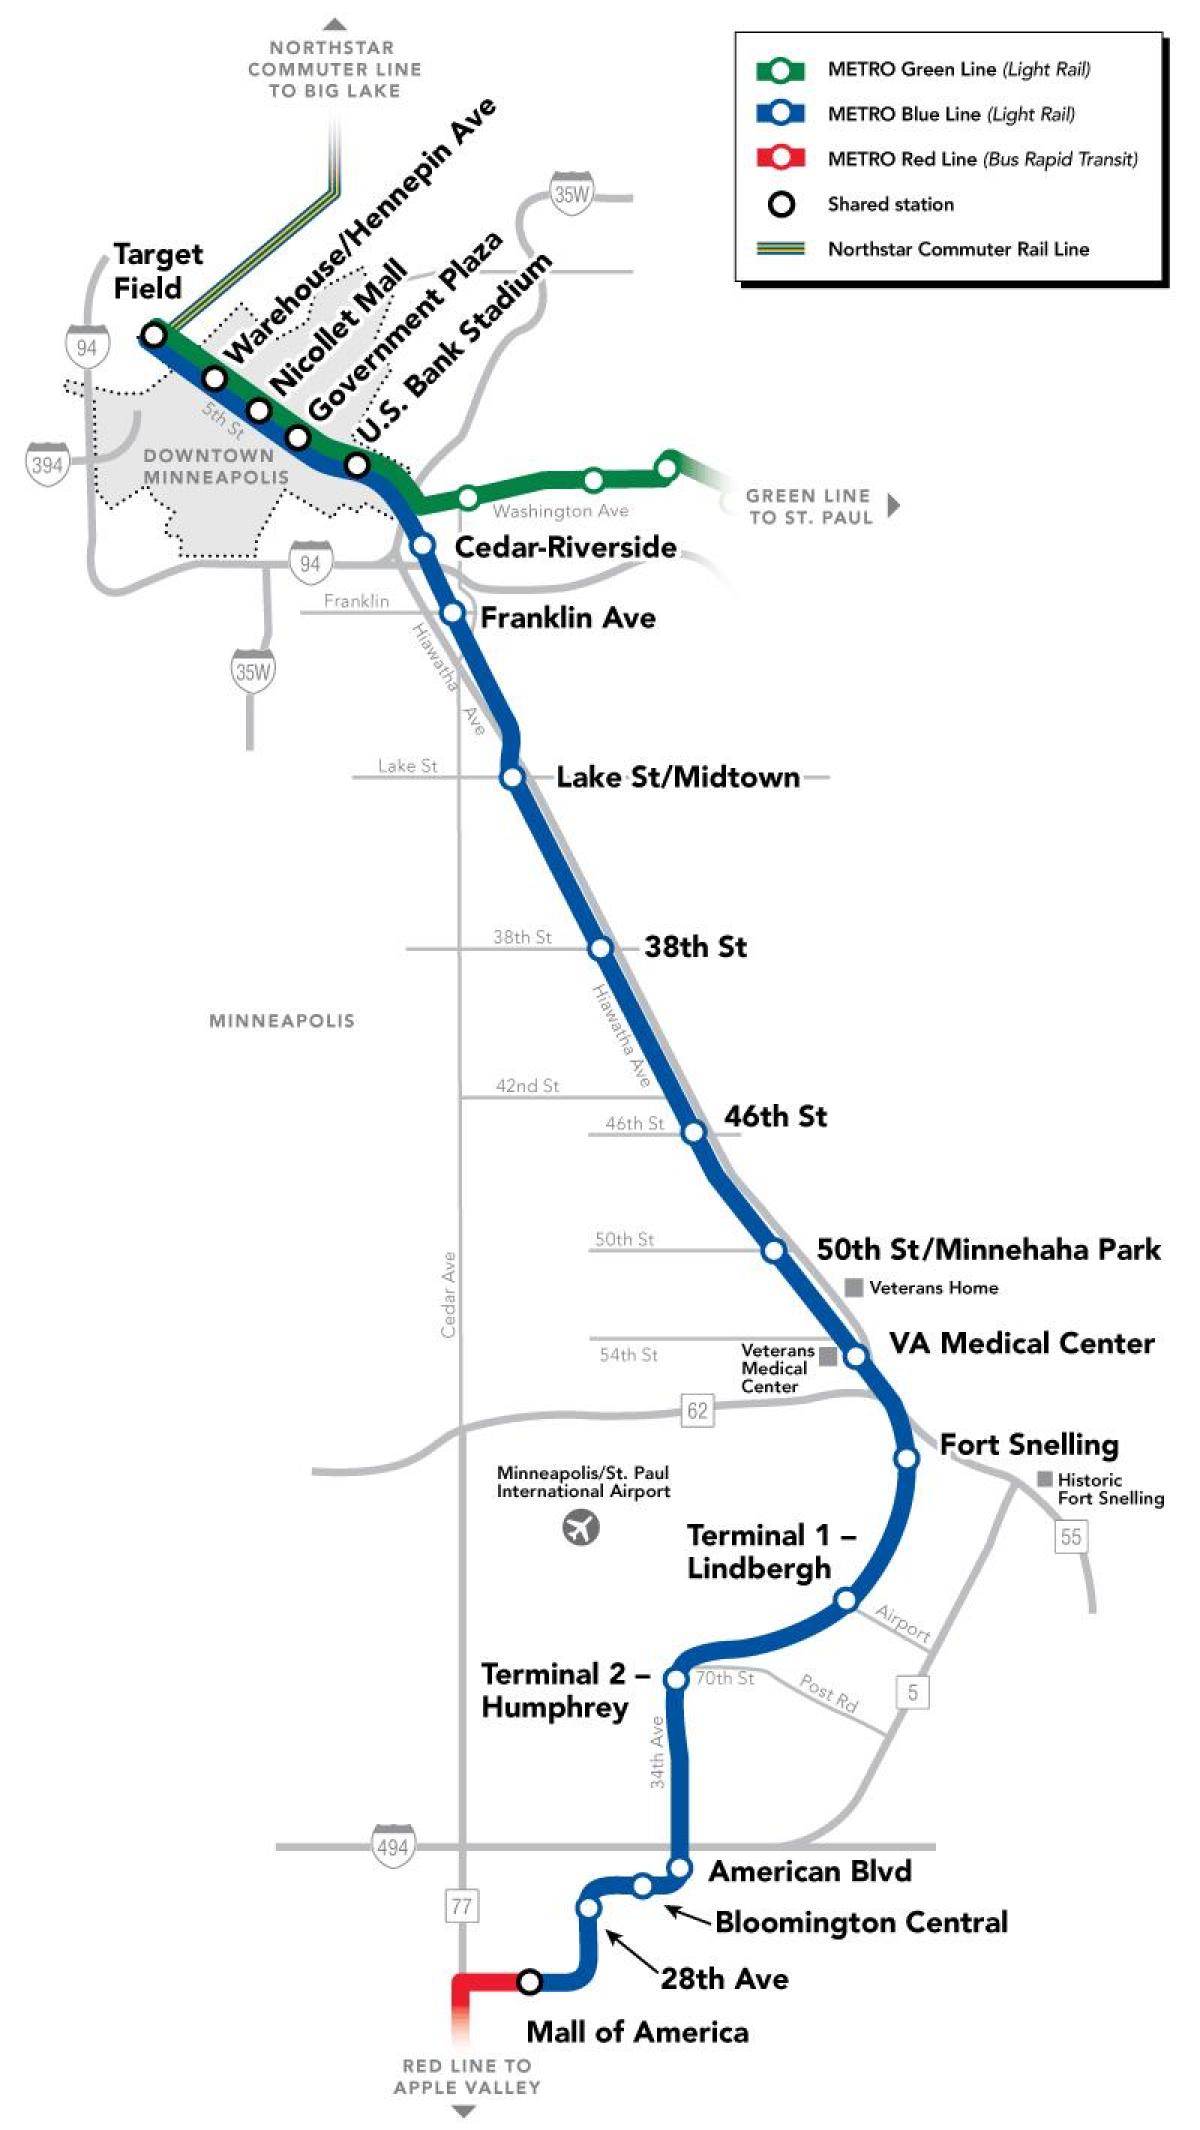 واشنگتن مترو خط آبی در نقشه